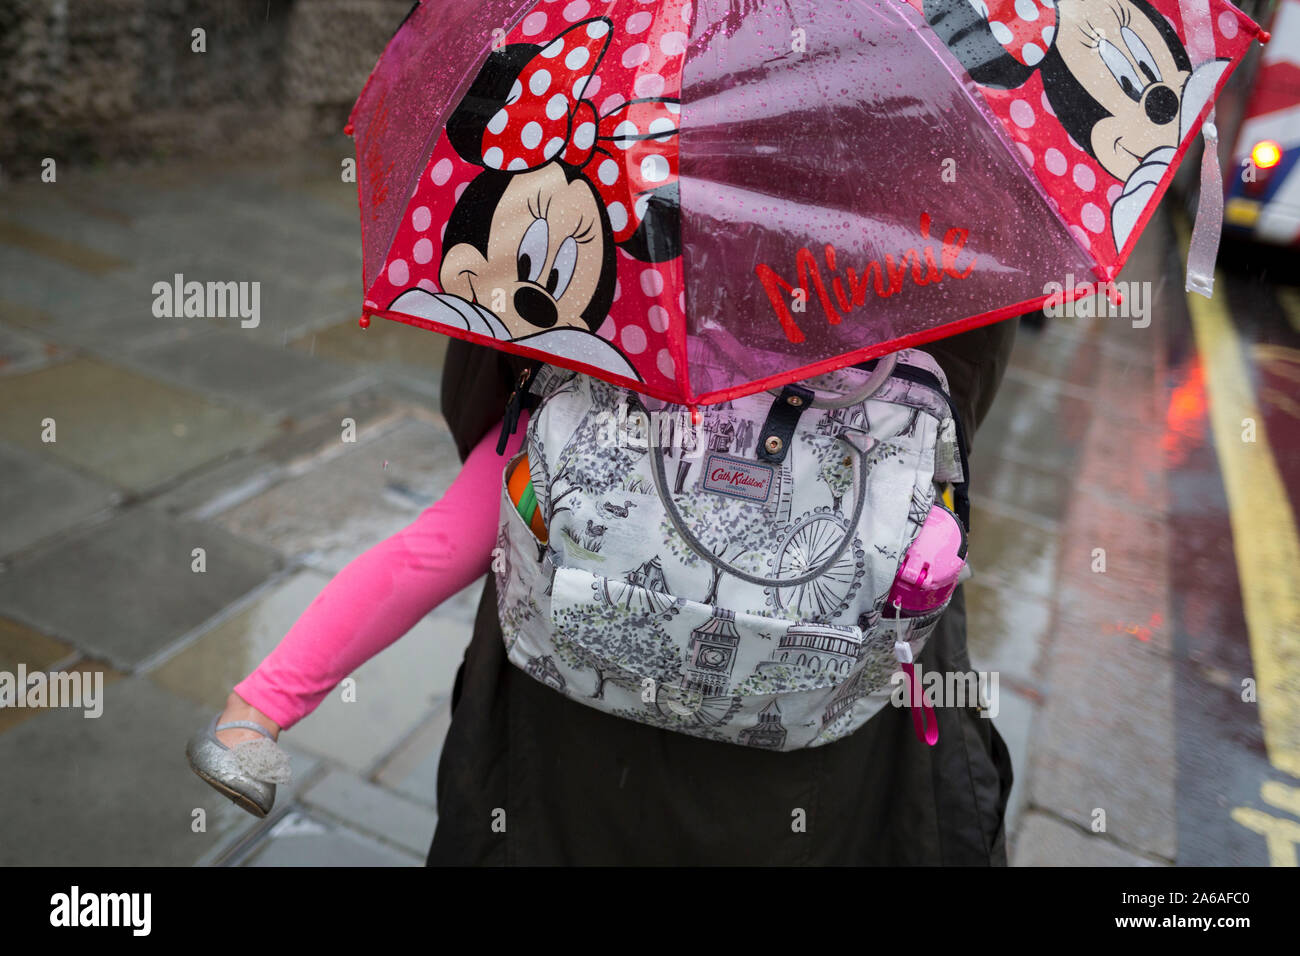 Une mère porte son enfant sous un parapluie Minnie Mouse au cours de fortes  pluies sur une après-midi d'automne près de Trafalgar Square, le 24 octobre  2019, à Westminster, Londres, Angleterre Photo